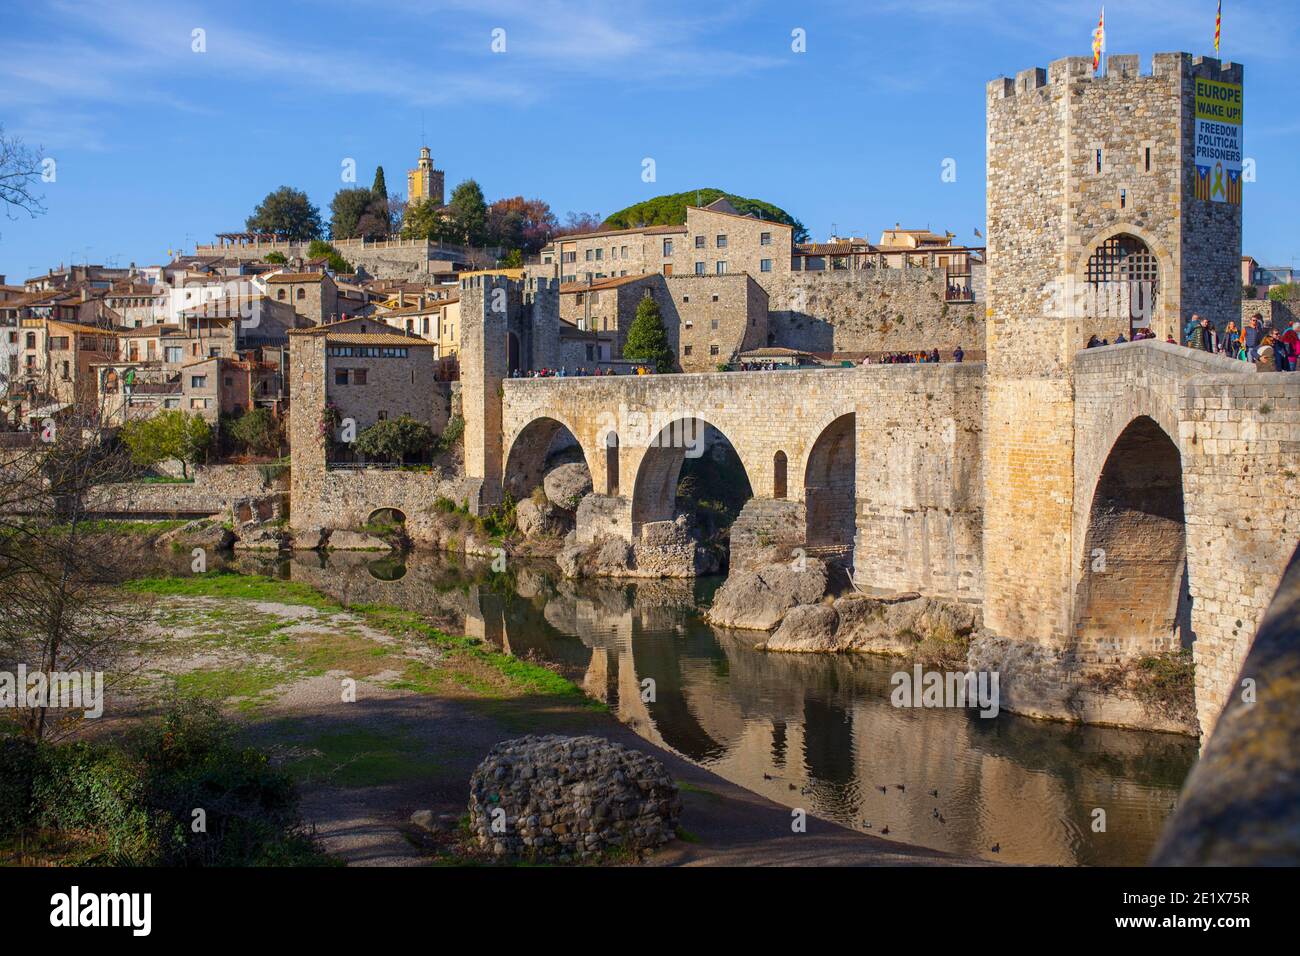 Besalu, Spagna - 28th dicembre 2019: Ponte medievale di Besalu coperto di segno che rivendica l'indipendenza. Garrotxa, Girona, Catalogna, Spagna Foto Stock